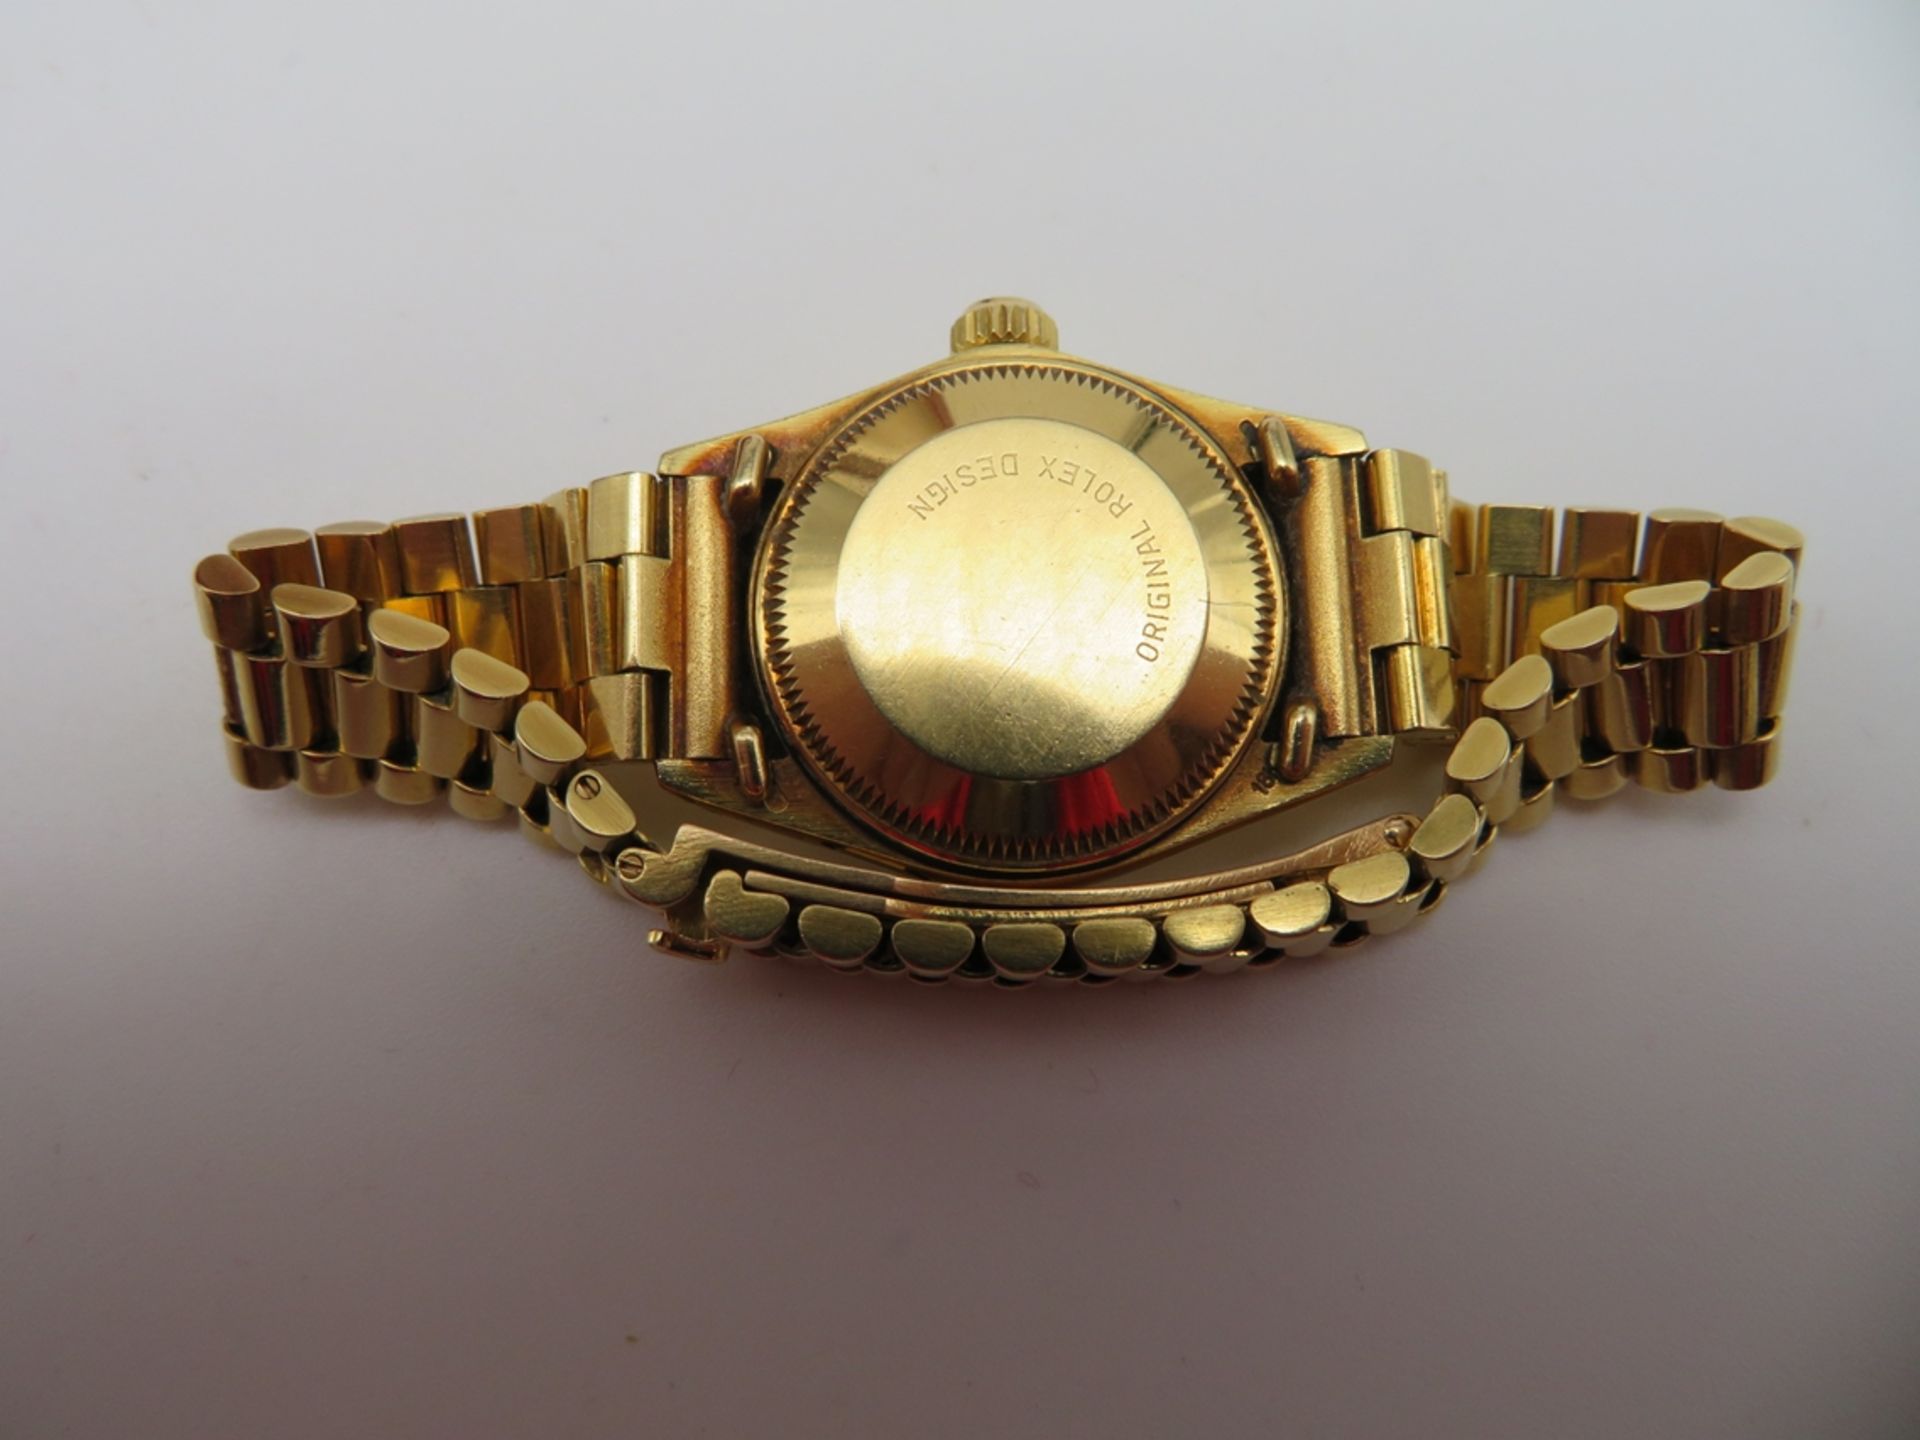 DAU, Rolex Datejust, BJ 30.03.1983, President-Armband mit verdeckter Goldschließe,  intakt, Zifferb - Bild 5 aus 7